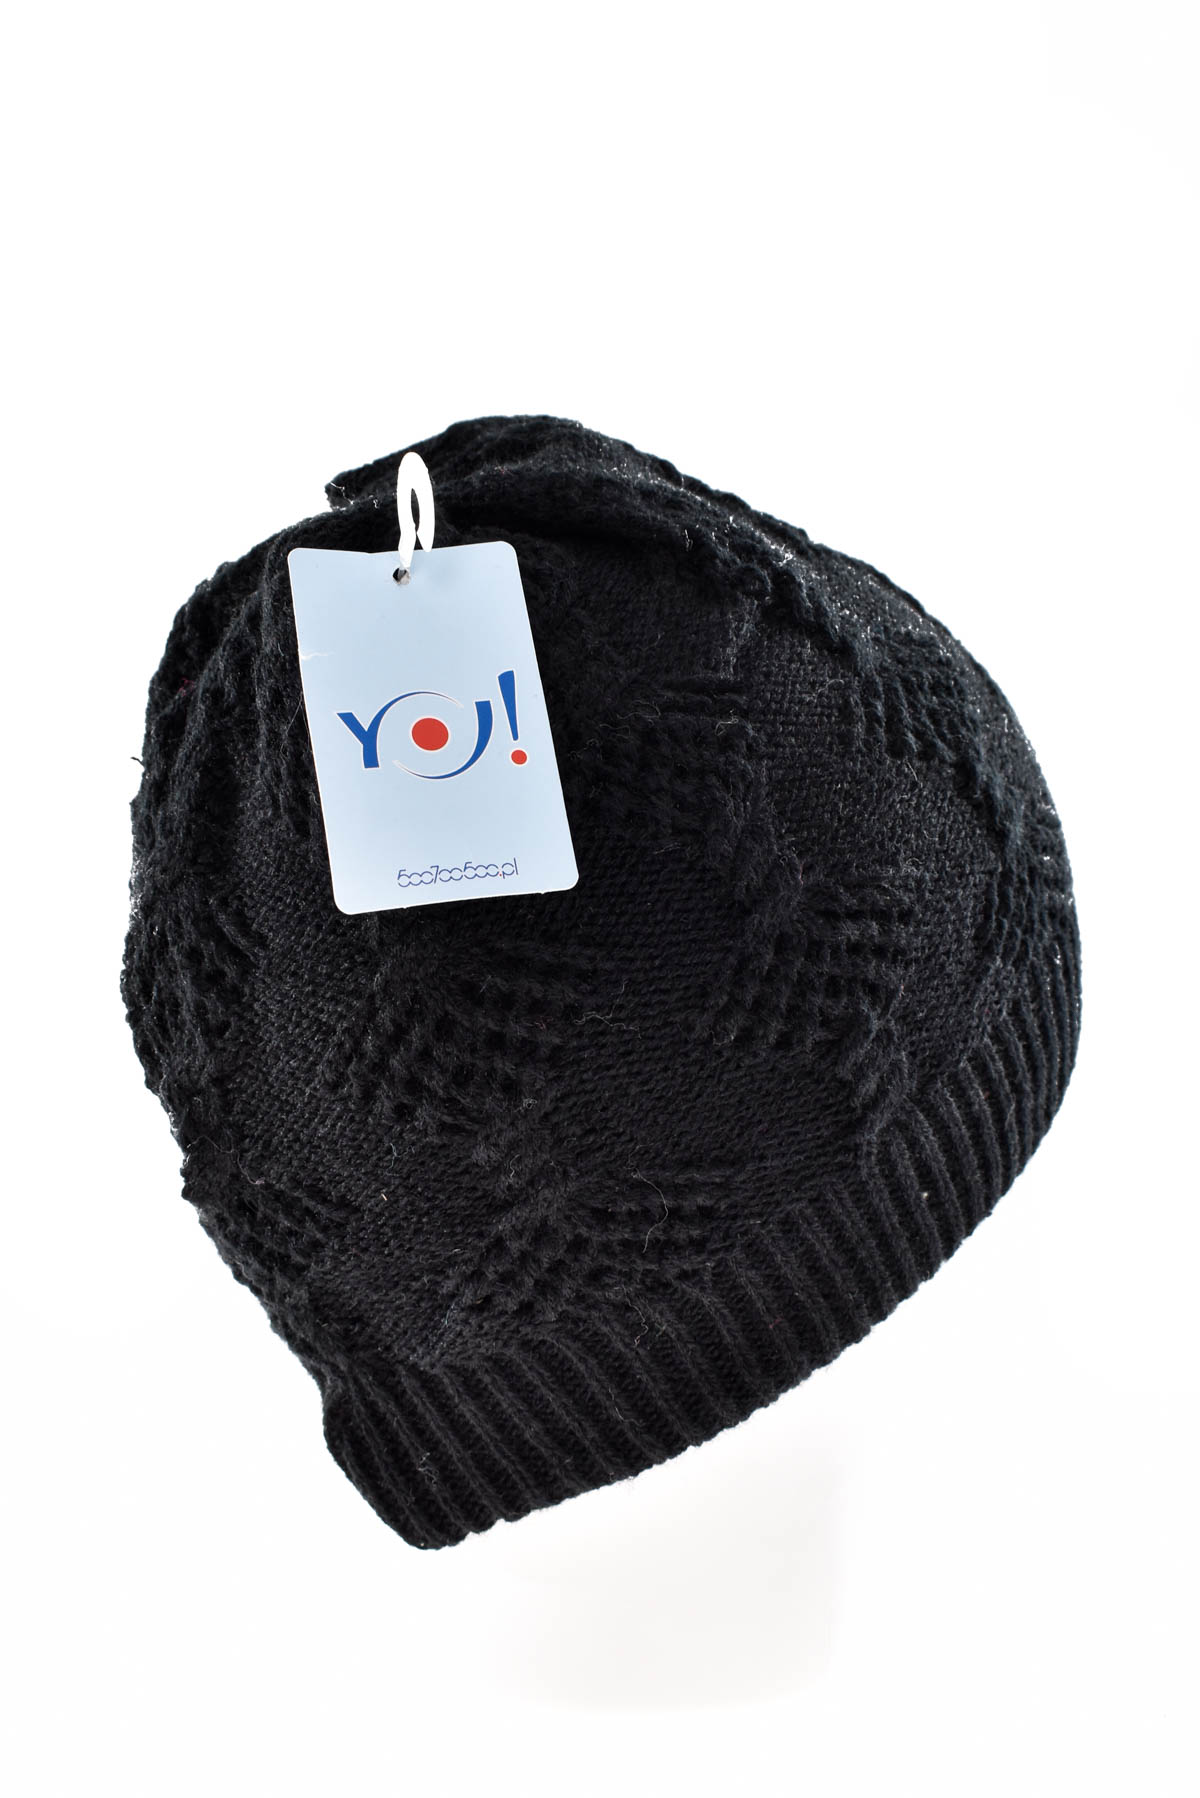 Παιδικό καπέλο - YO! club - 1